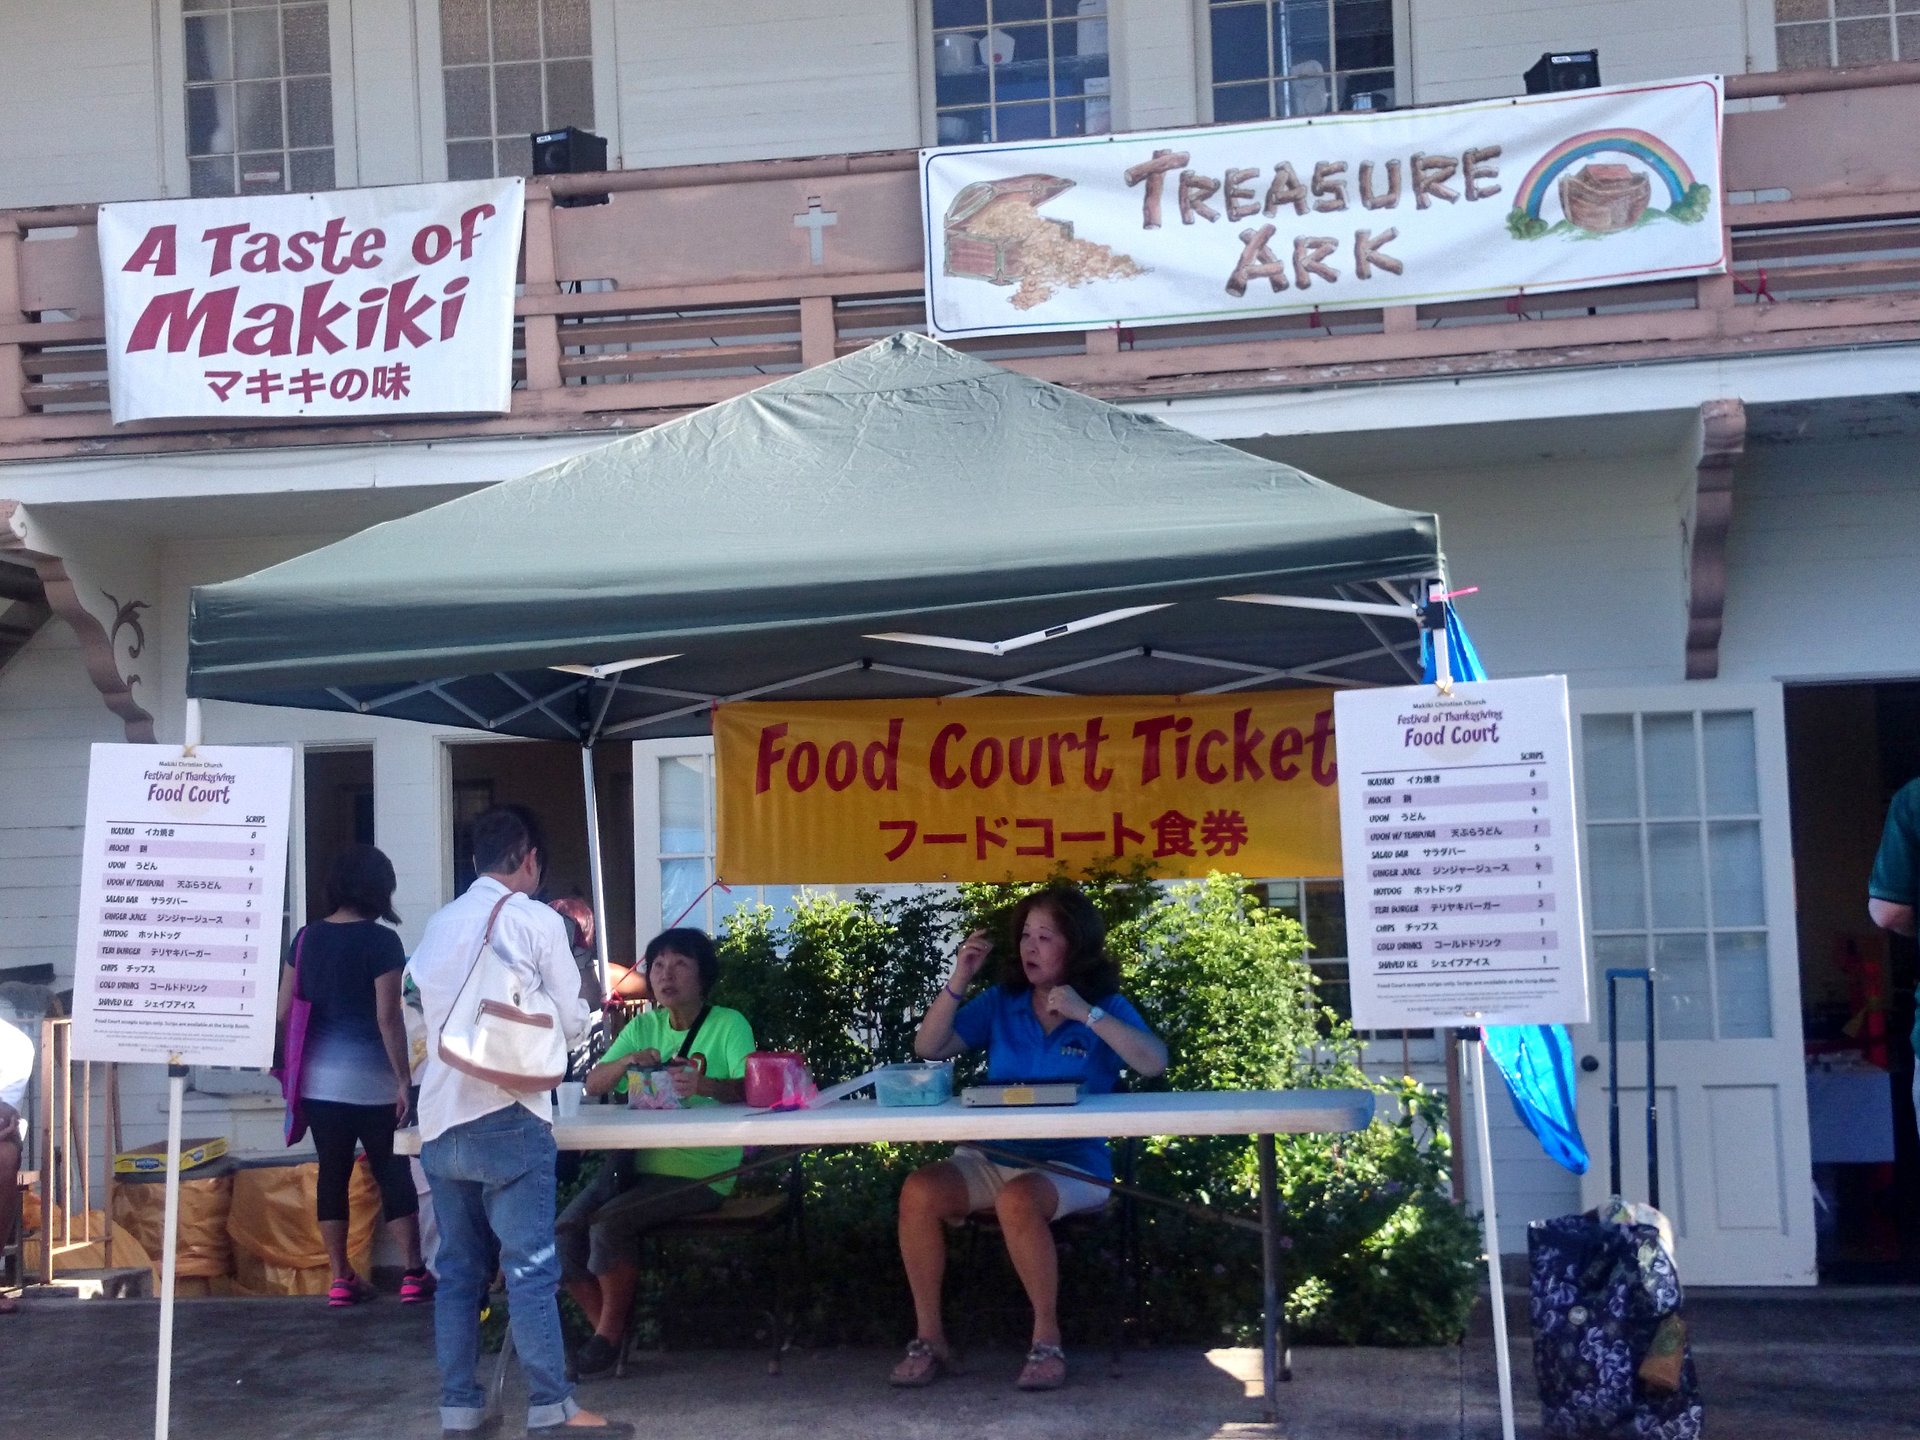 ハワイの穴場イベント！マキキフェスティバルが大盛況！食べ歩きが楽しい！グルメ&掘り出し物